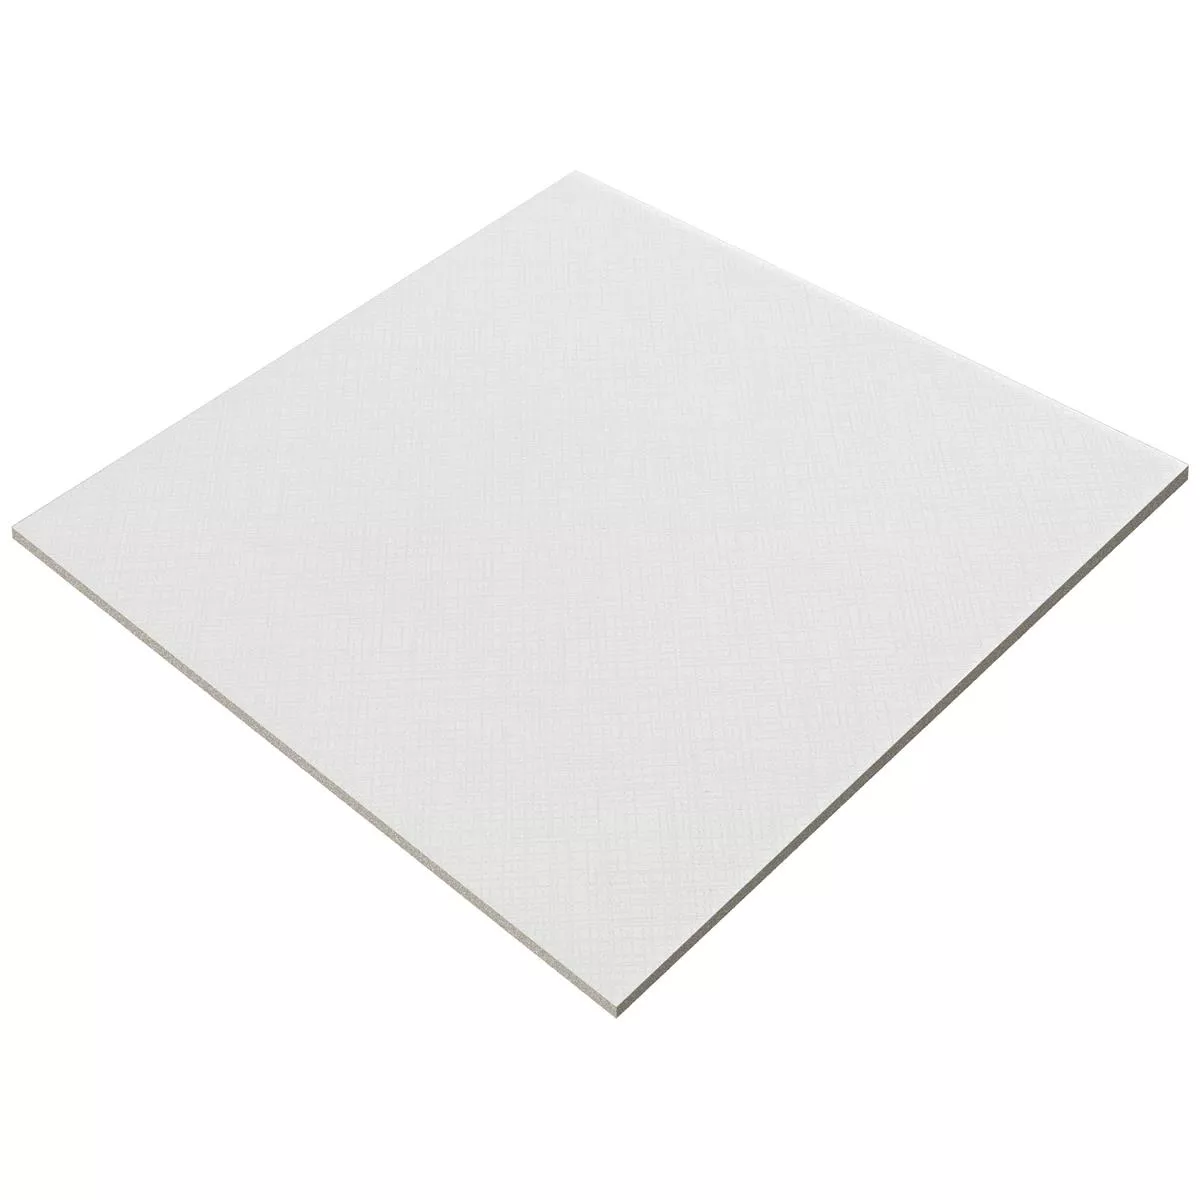 Sample Floor Tiles Cement Optic Wildflower Blanc Basic Tile 18,5x18,5cm